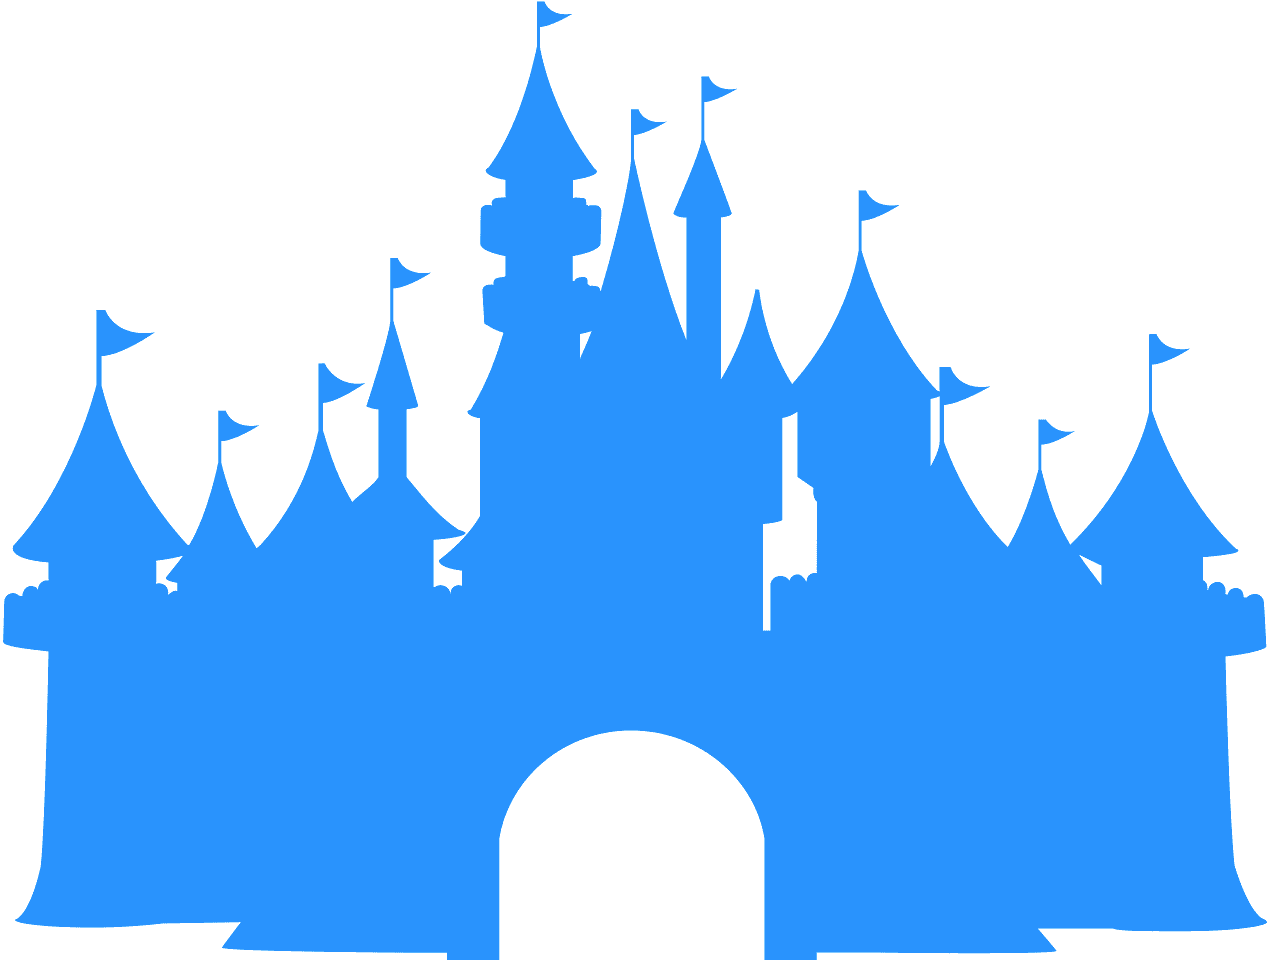 Free Free 323 Transparent Disney Castle Svg SVG PNG EPS DXF File